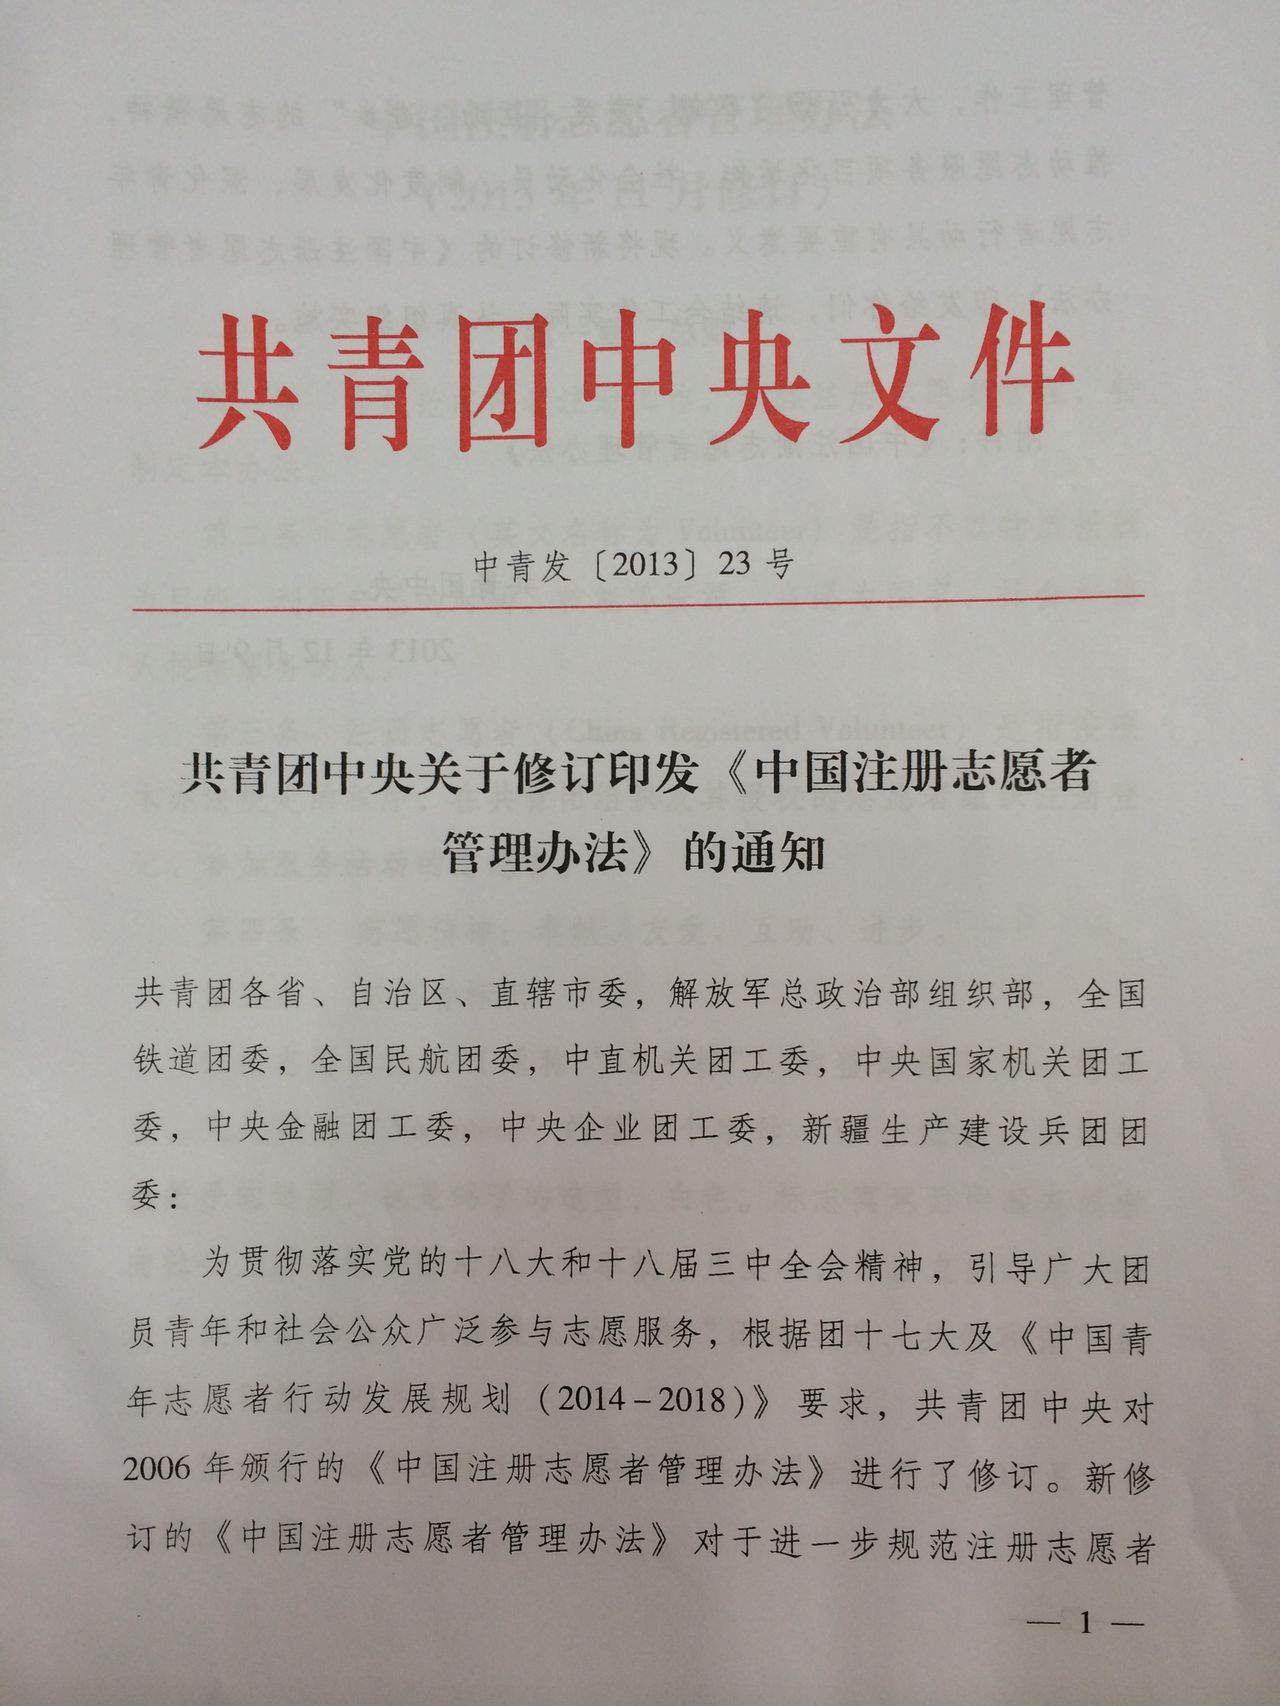 中國註冊志願者管理辦法